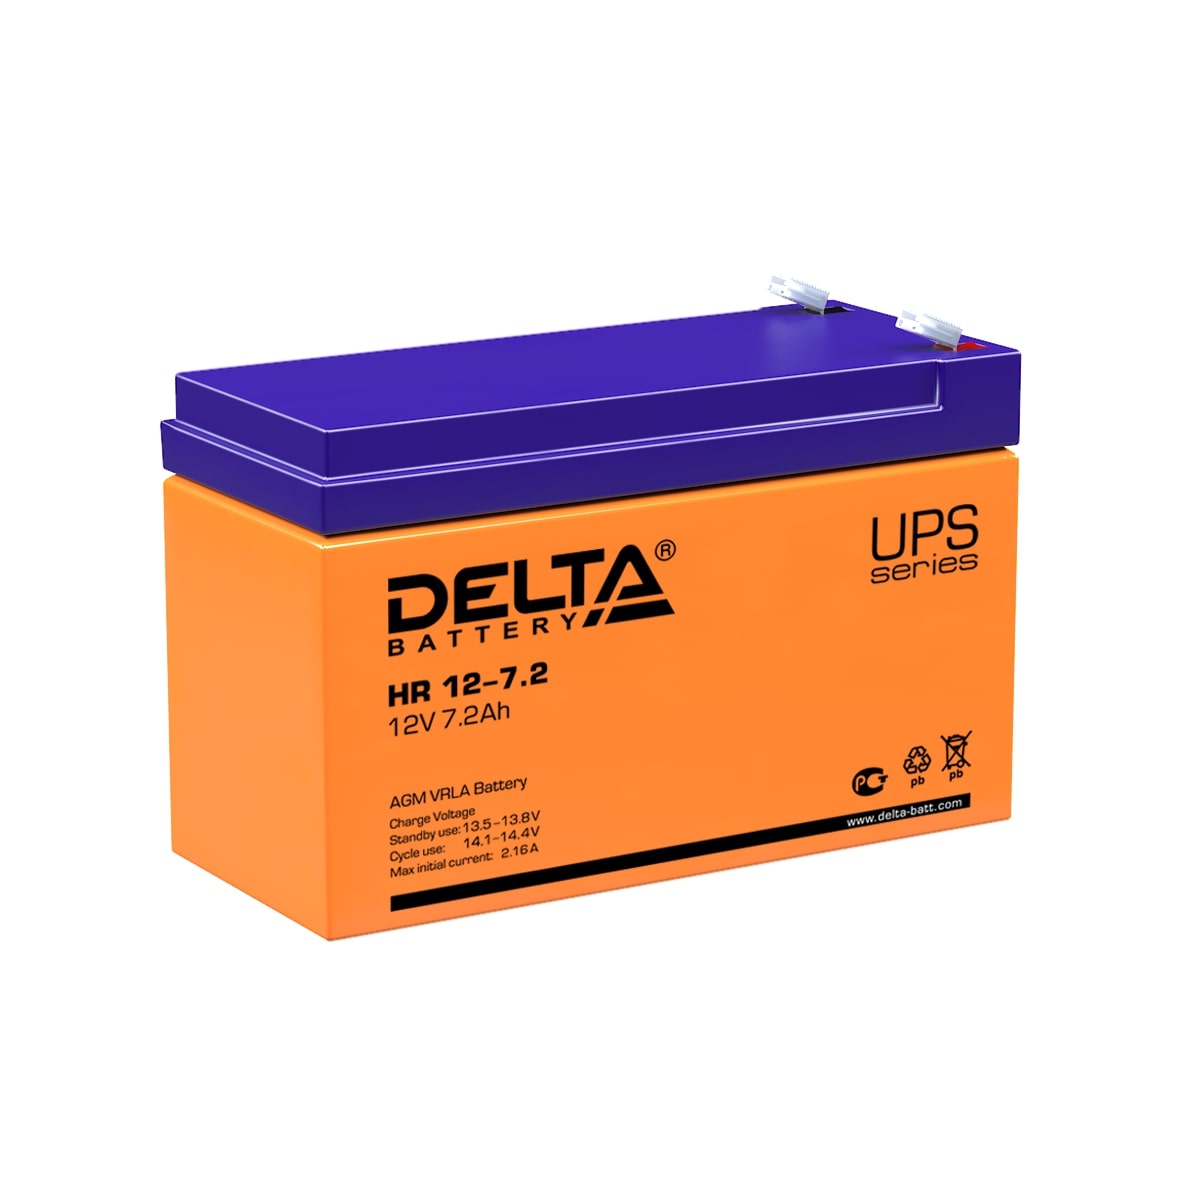 Аккумуляторы DELTA DELTA HR 12-7.2 купить 8 906 062 07 78